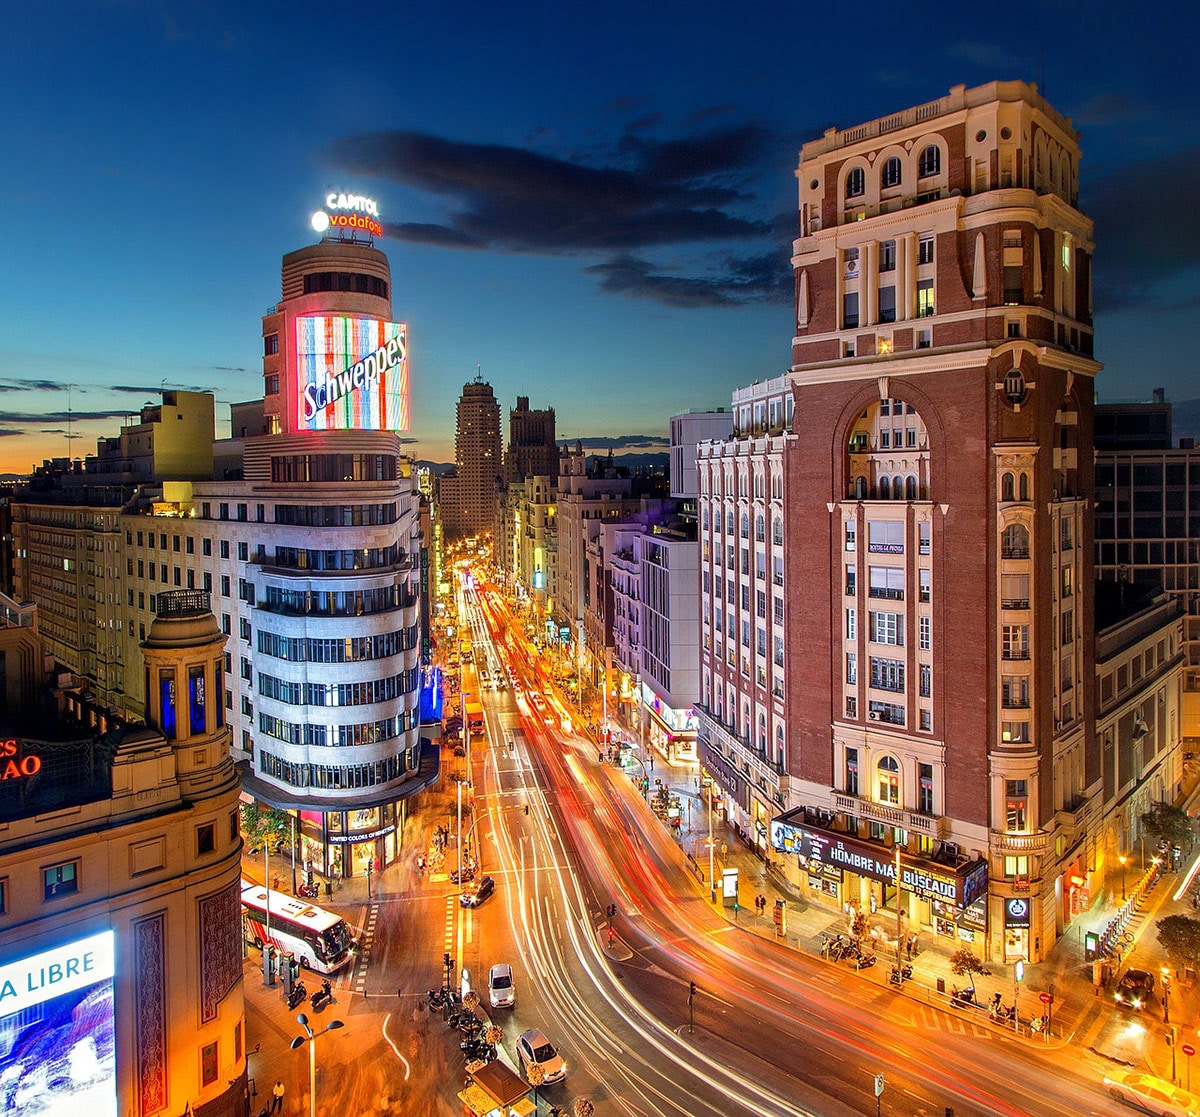 Toeristische attracties in Madrid